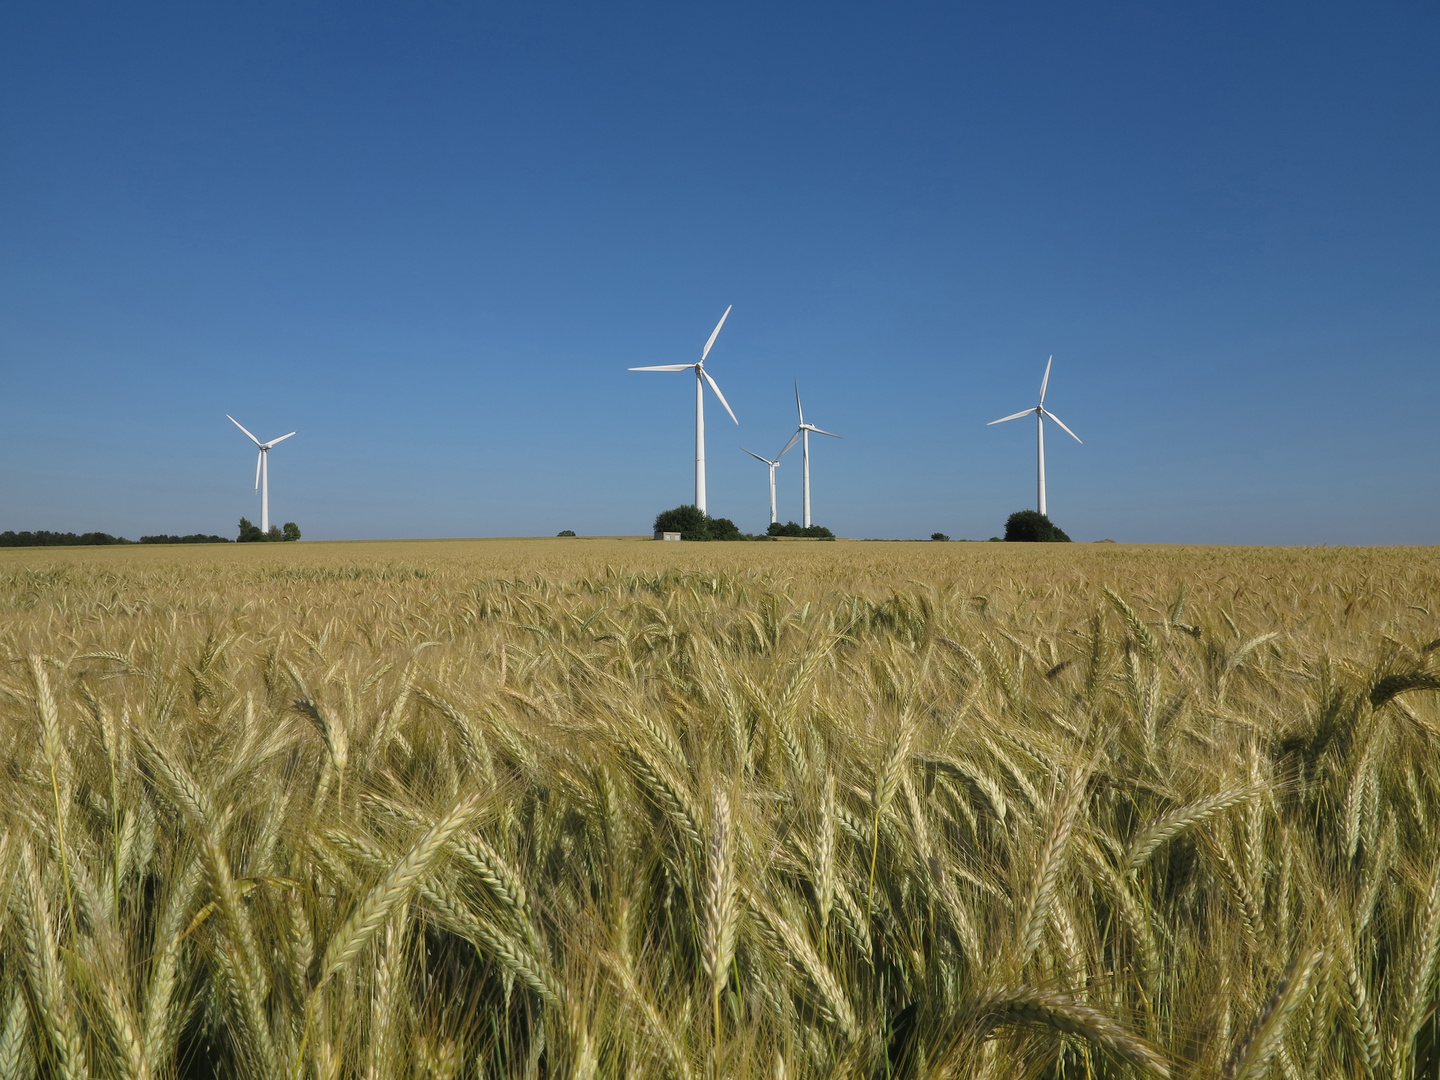 Gerstenfeld und Windkraftanlagen vor blauem Himmel in der Soester Börde